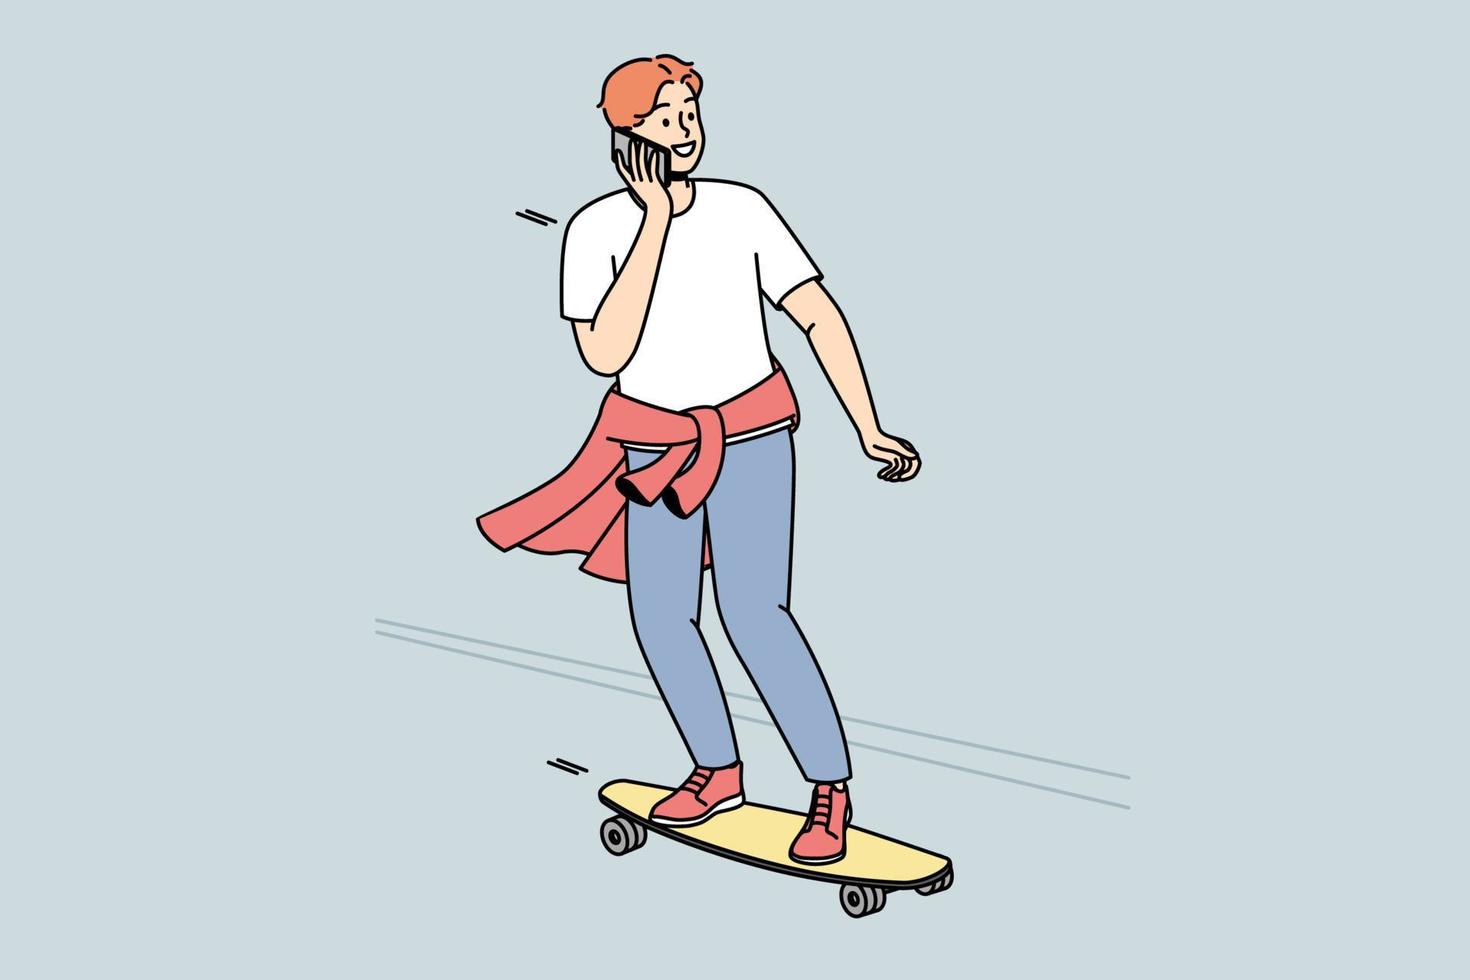 Der Typ rollt auf dem Skateboard die Straße hinunter und telefoniert gleichzeitig mit dem Handy. Junge übt Skateboarding im Freien. Teenager bewegt sich auf dem Longboard auf der Straße, chattet auf dem Smartphone. Vektorgrafiken in Farbe. vektor